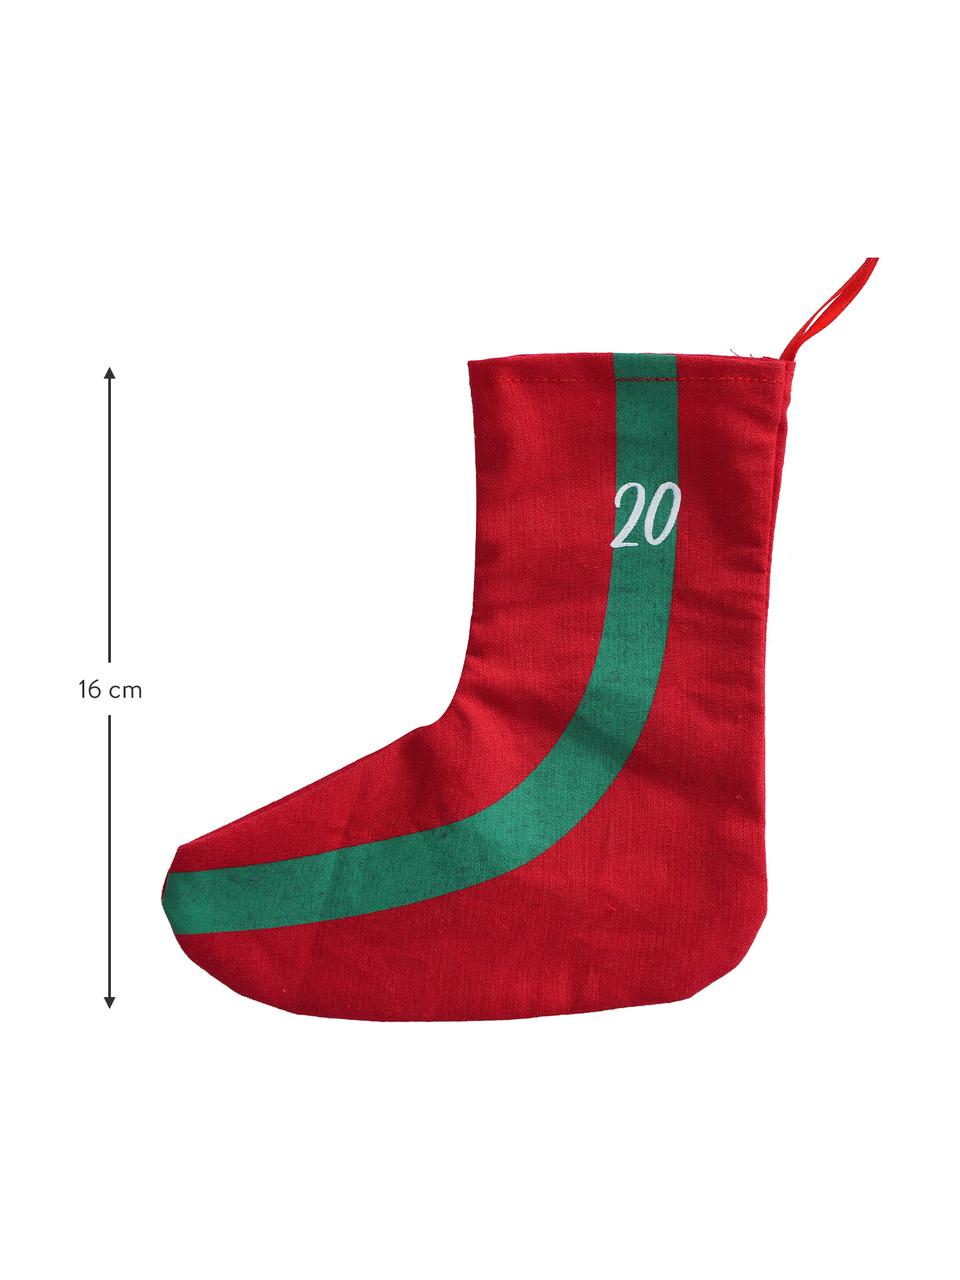 Calendario dell'avvento Socky, 280 cm, Feltro, Verde, rosso, bianco, Lung. 280 cm